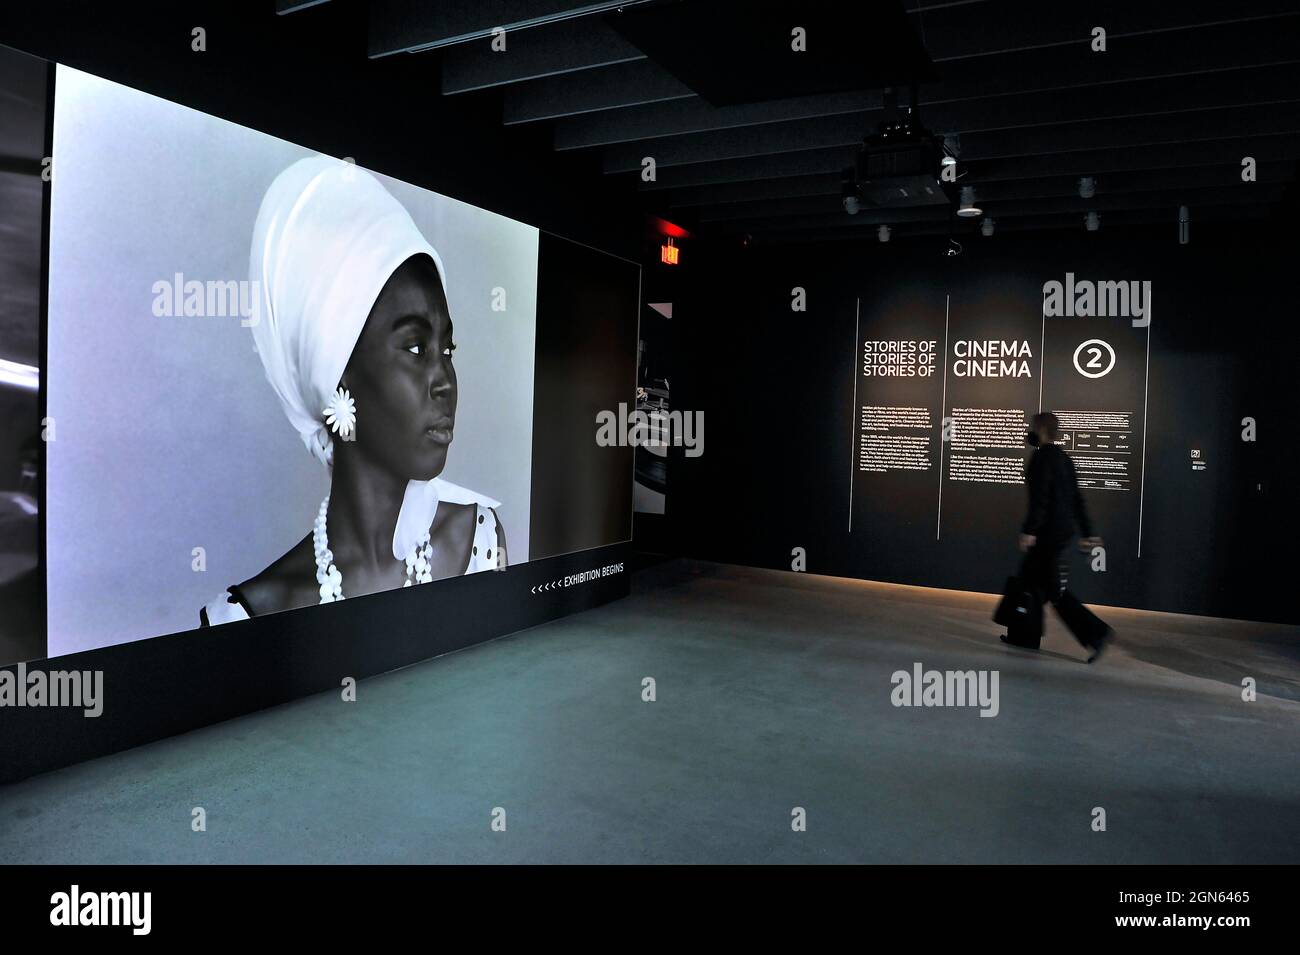 Klassischer Schwarz-Weiß-Film, der am Eingang zu einer Ausstellung im Academy Museum of Motion Pictions in Los Angeles, Kalifornien, auf eine Leinwand projiziert wird Stockfoto